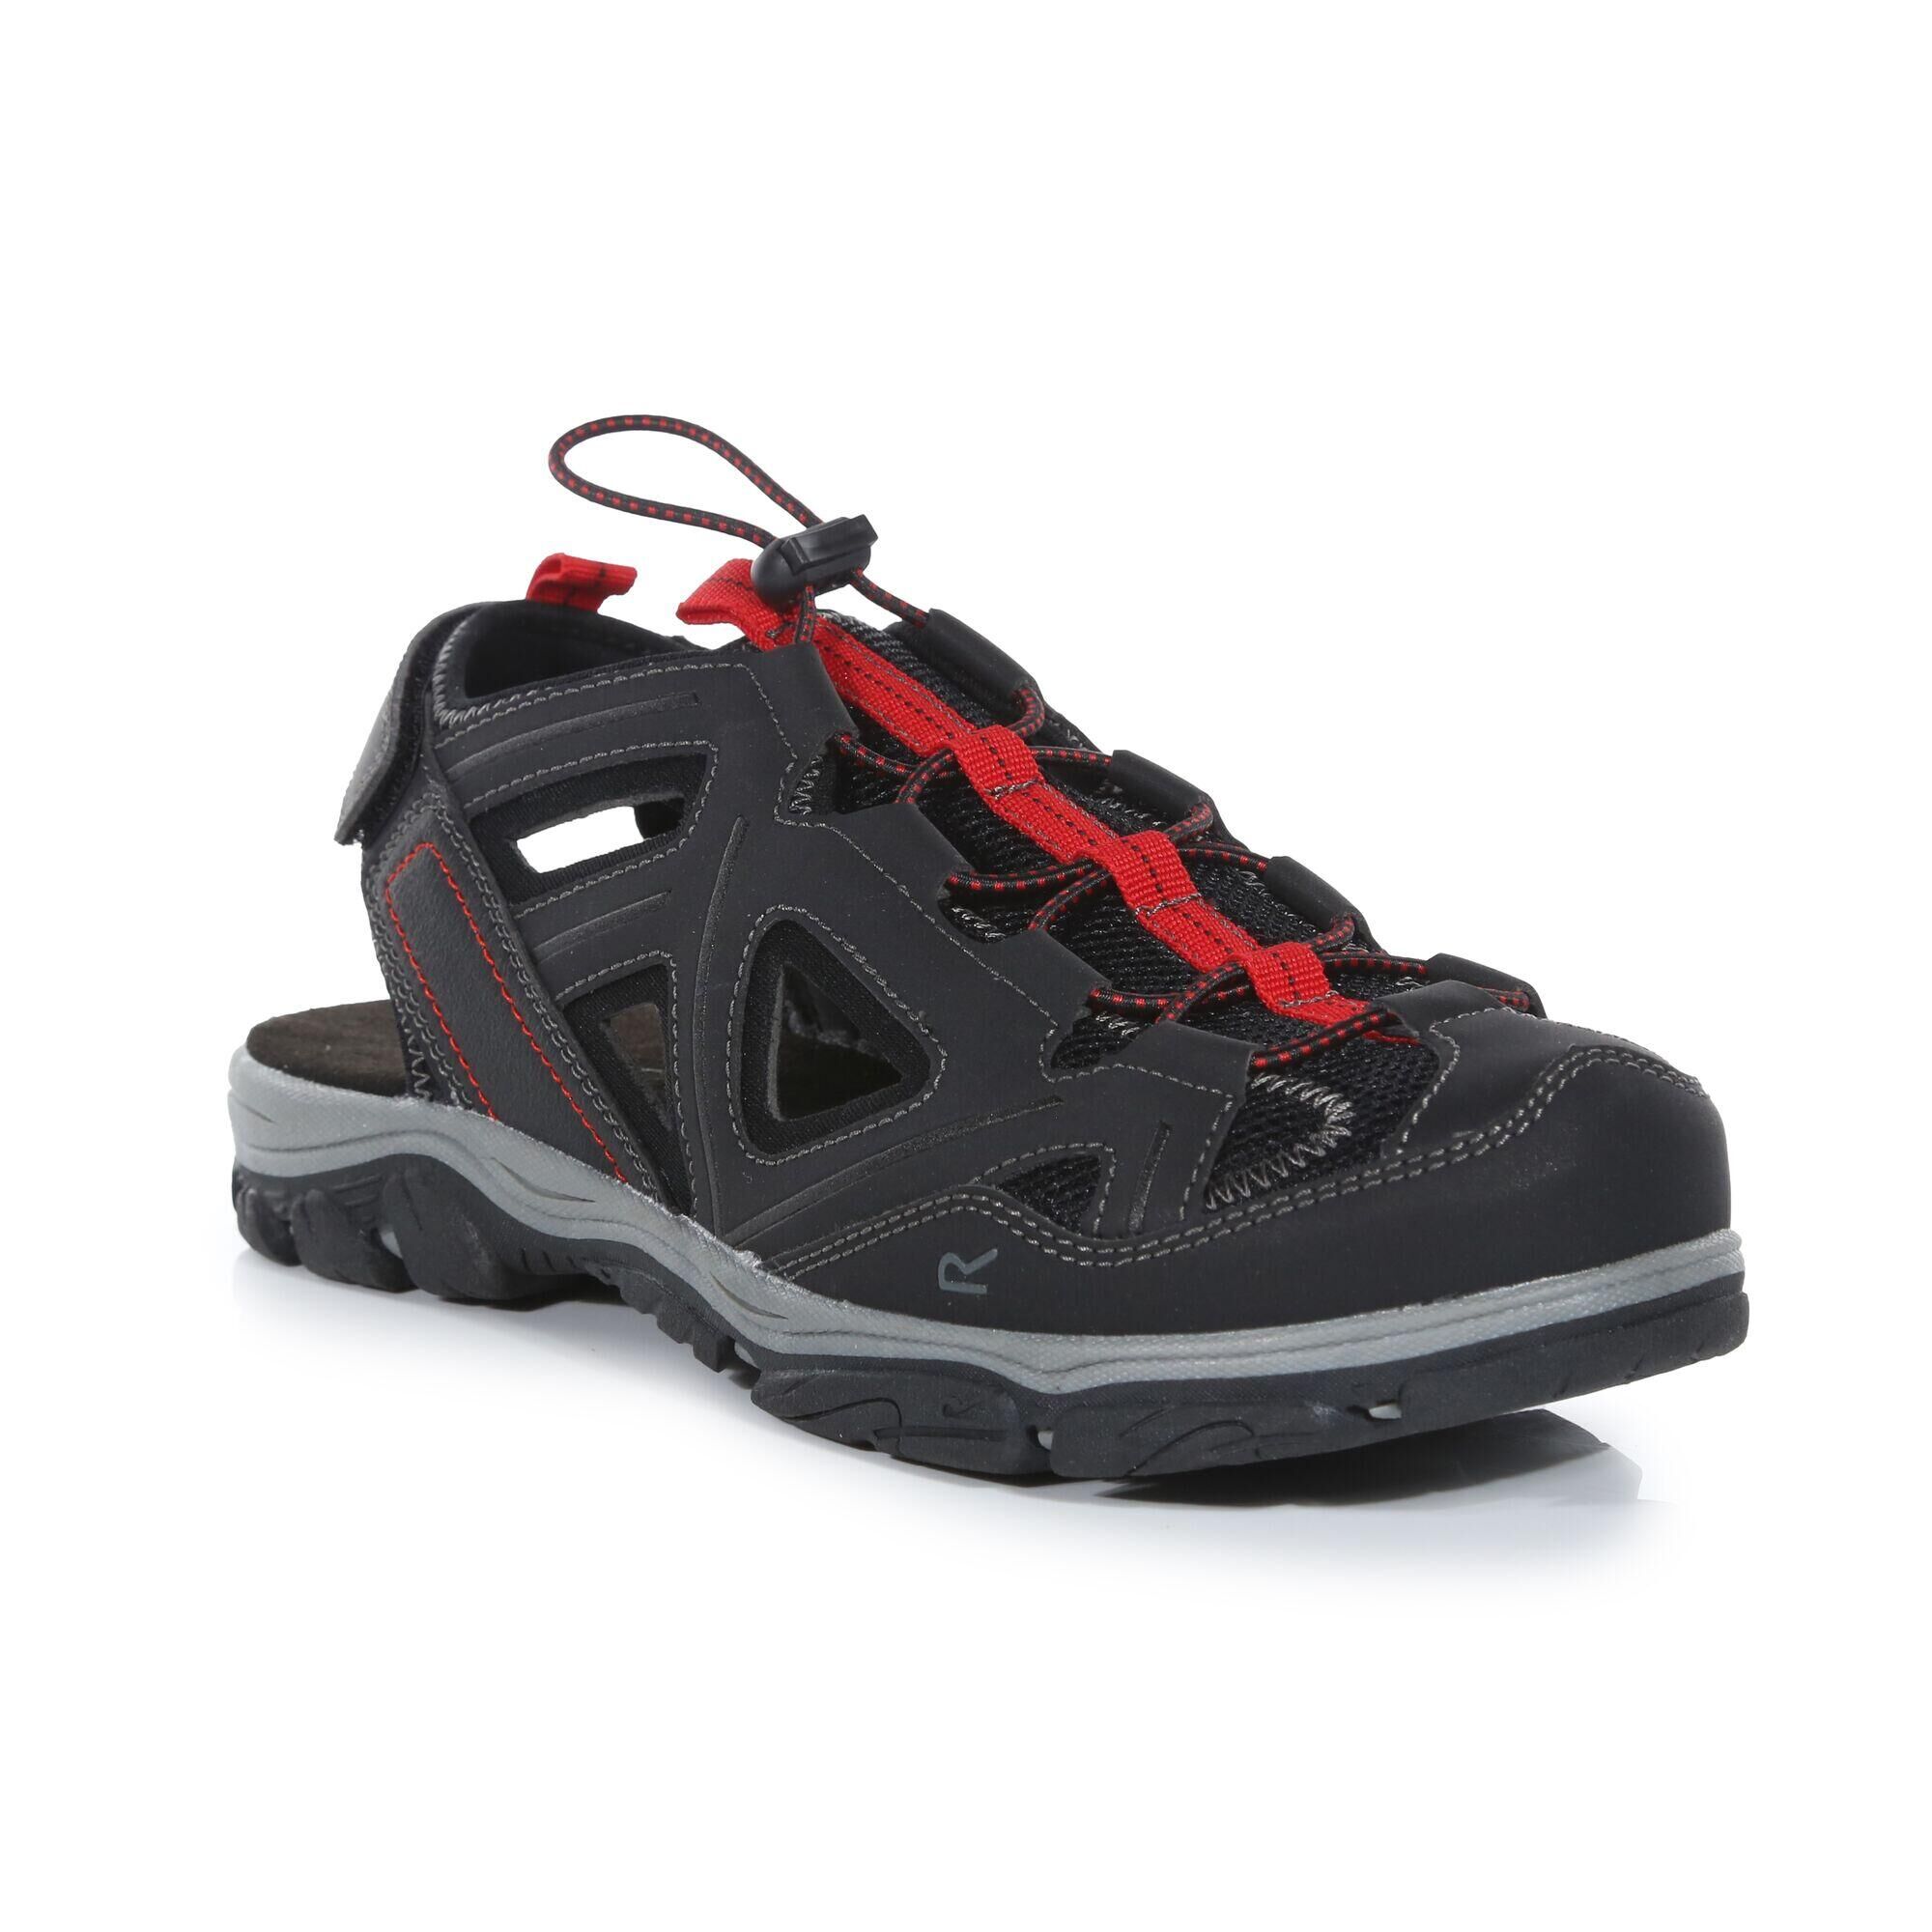 REGATTA Westshore 3 Men's Hiking Sandals - Black / Red